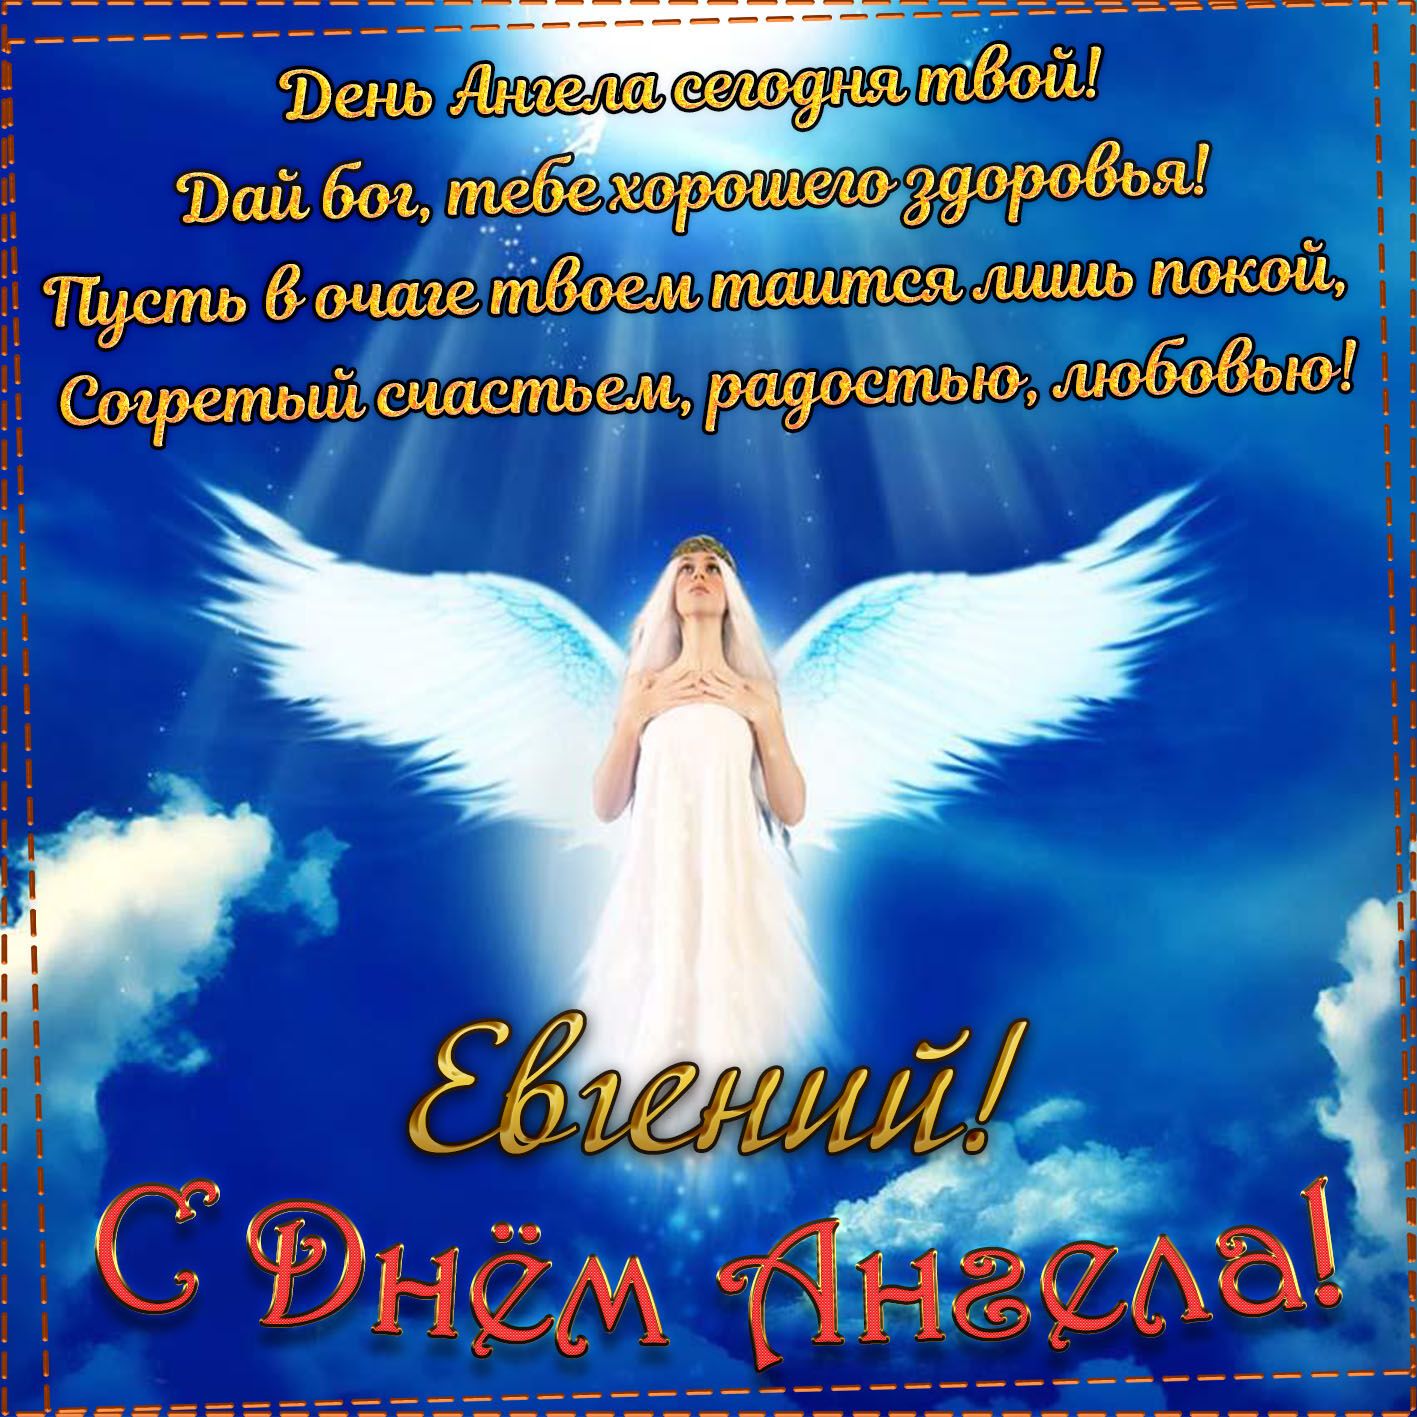 С Днем ангела Евгения! Картинки и открытки для поздравления на именины 25 февраля